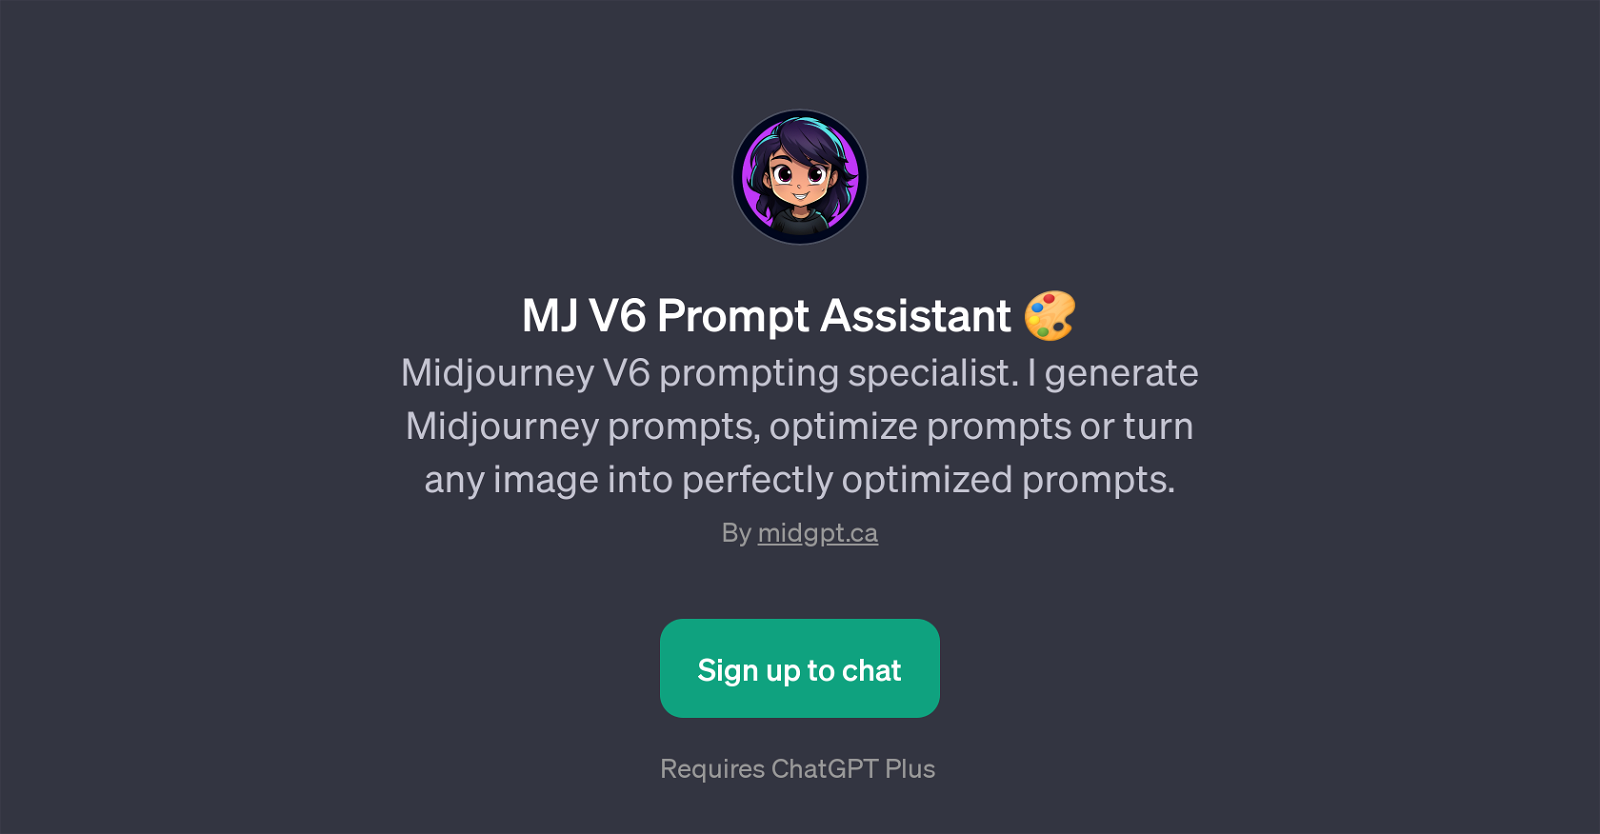 MJ V6 Prompt Assistant website